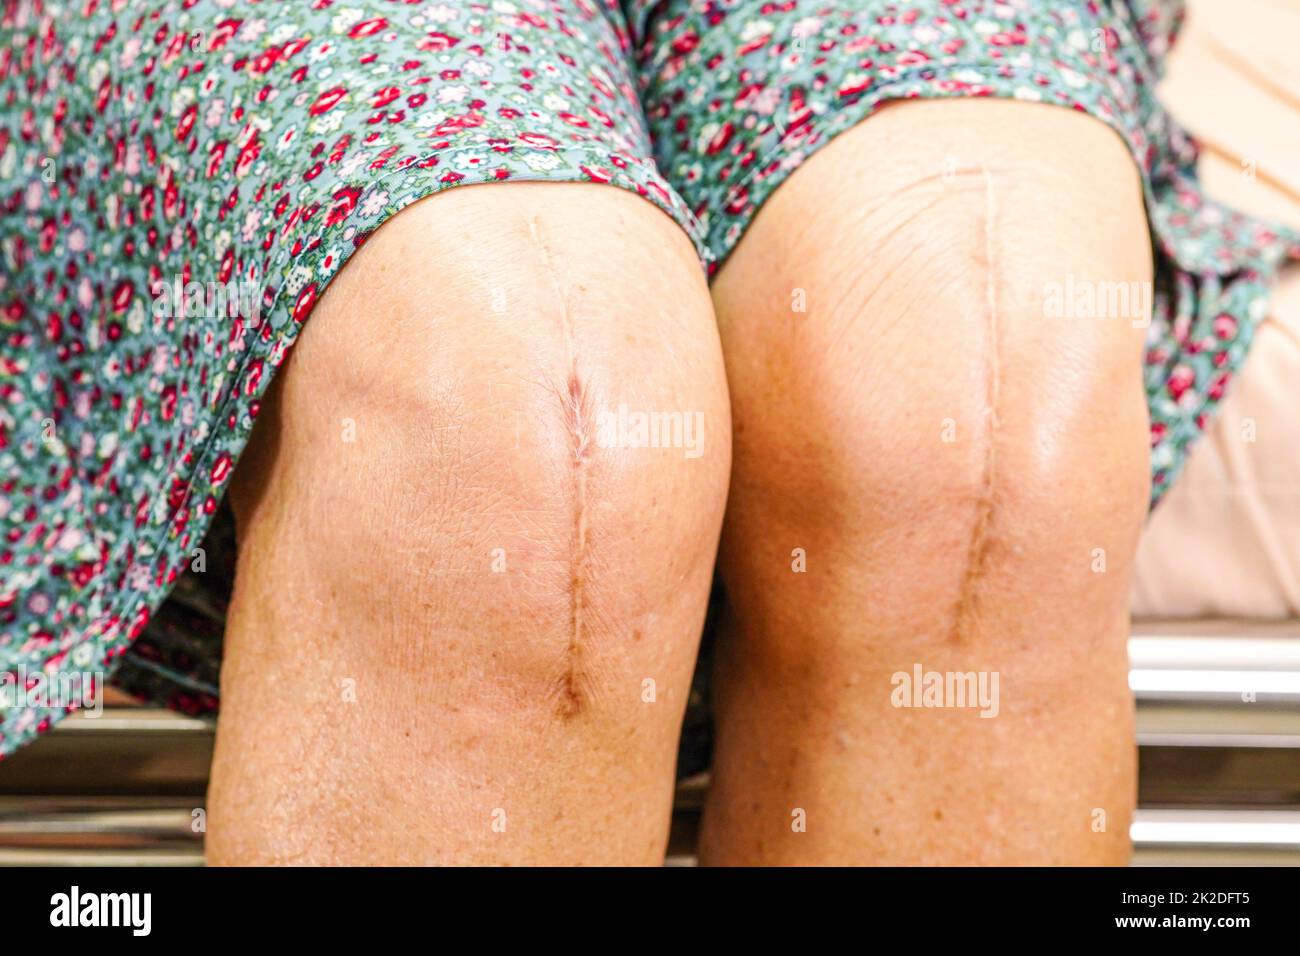 Asiatische ältere Frau Patientin mit Narbenersatz Knie-Operation im Krankenhaus. Stockfoto